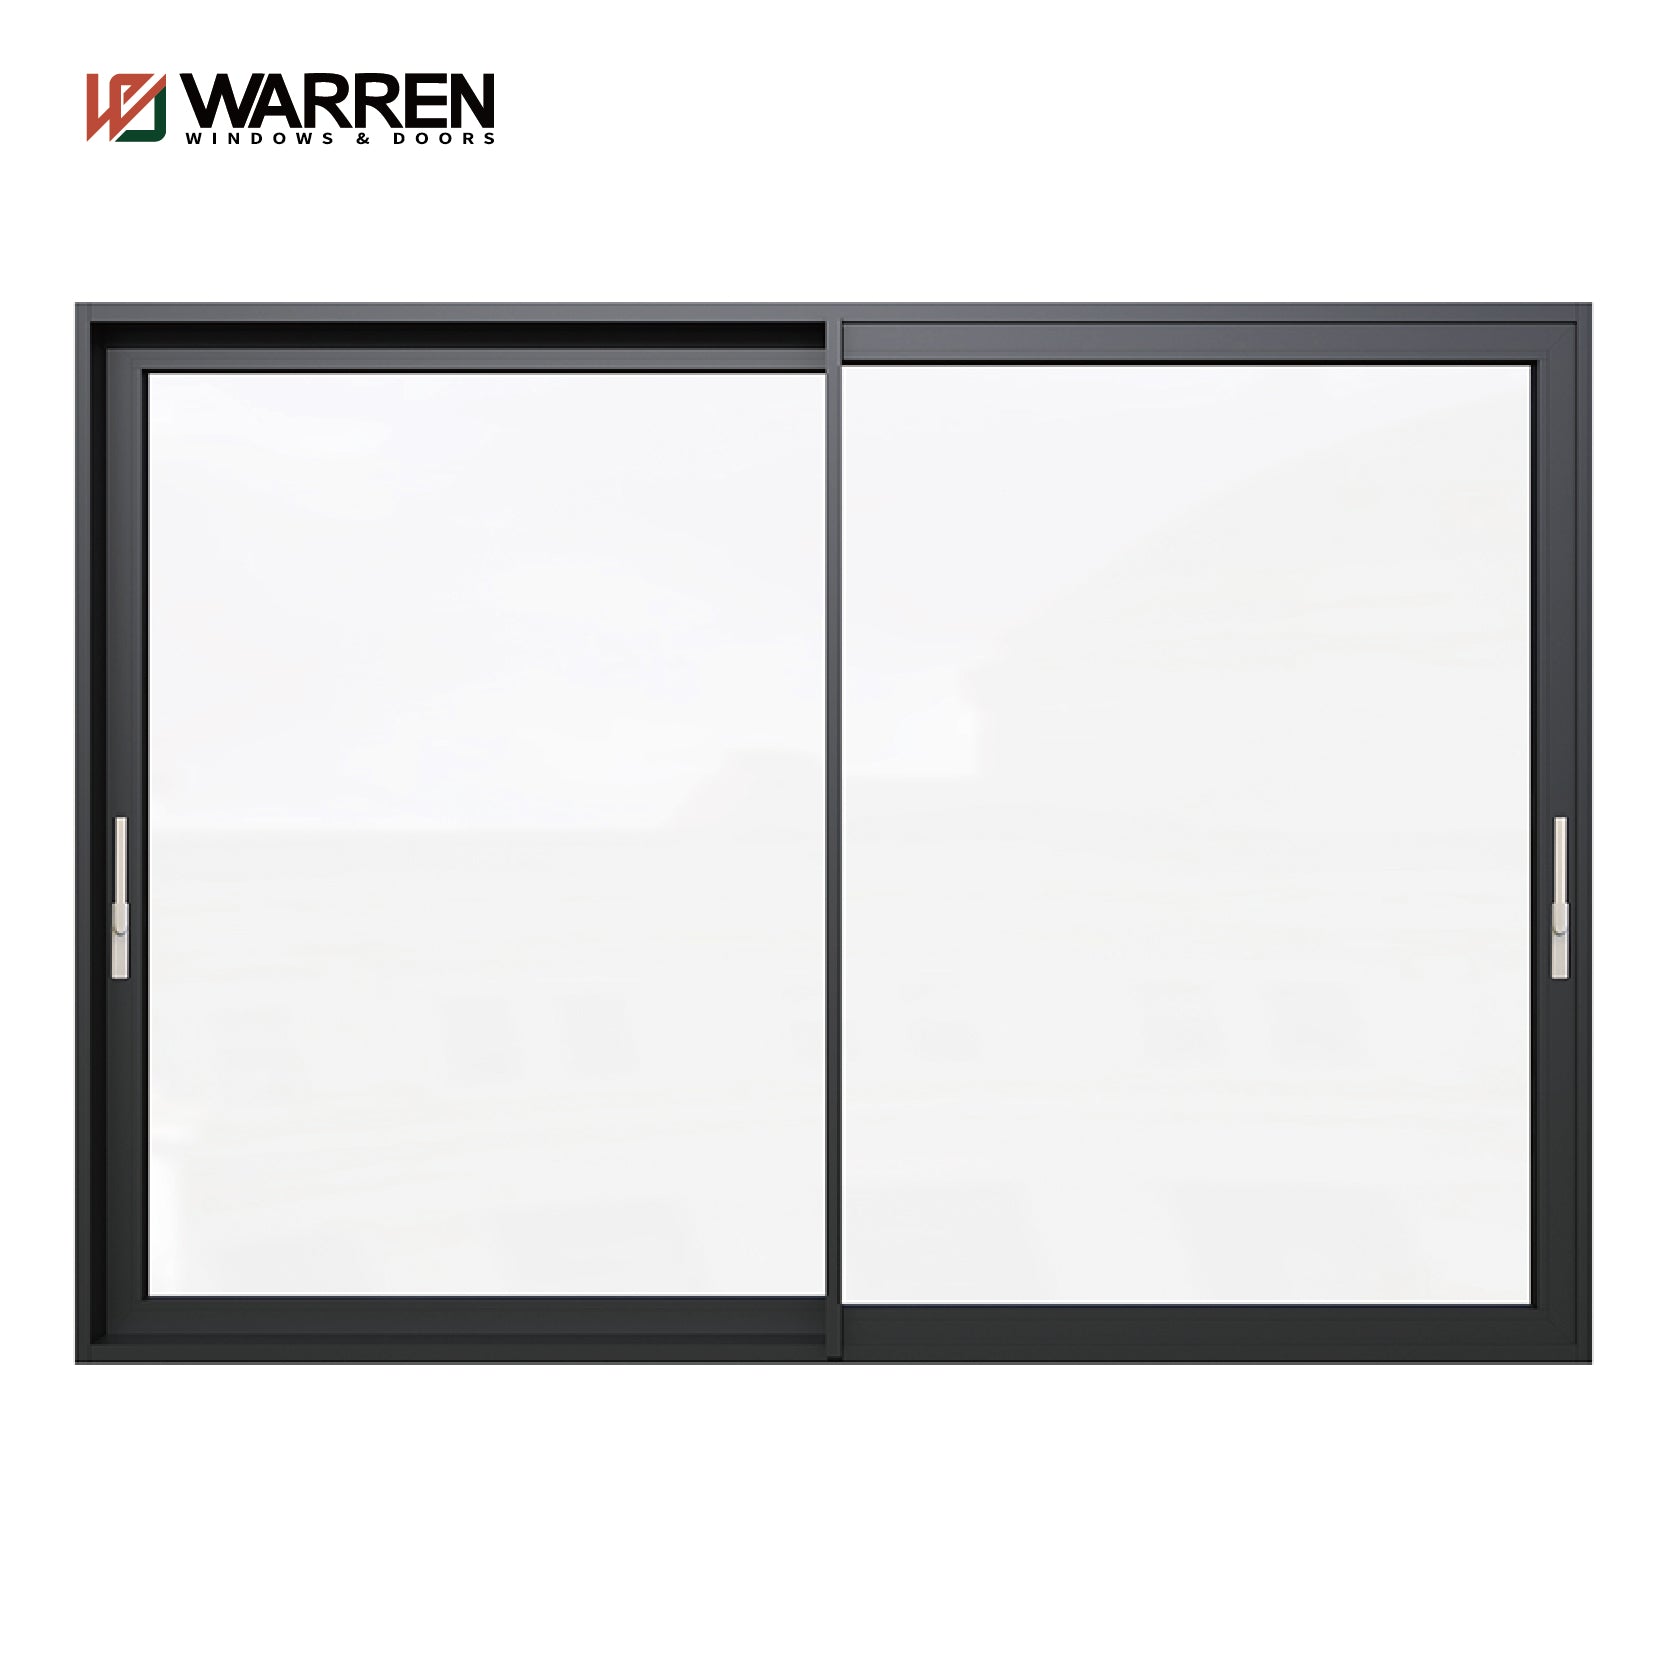 Warren Factory Wholesale High Quality Aluminum Slide Door For Sale Safety Glass Slide Door